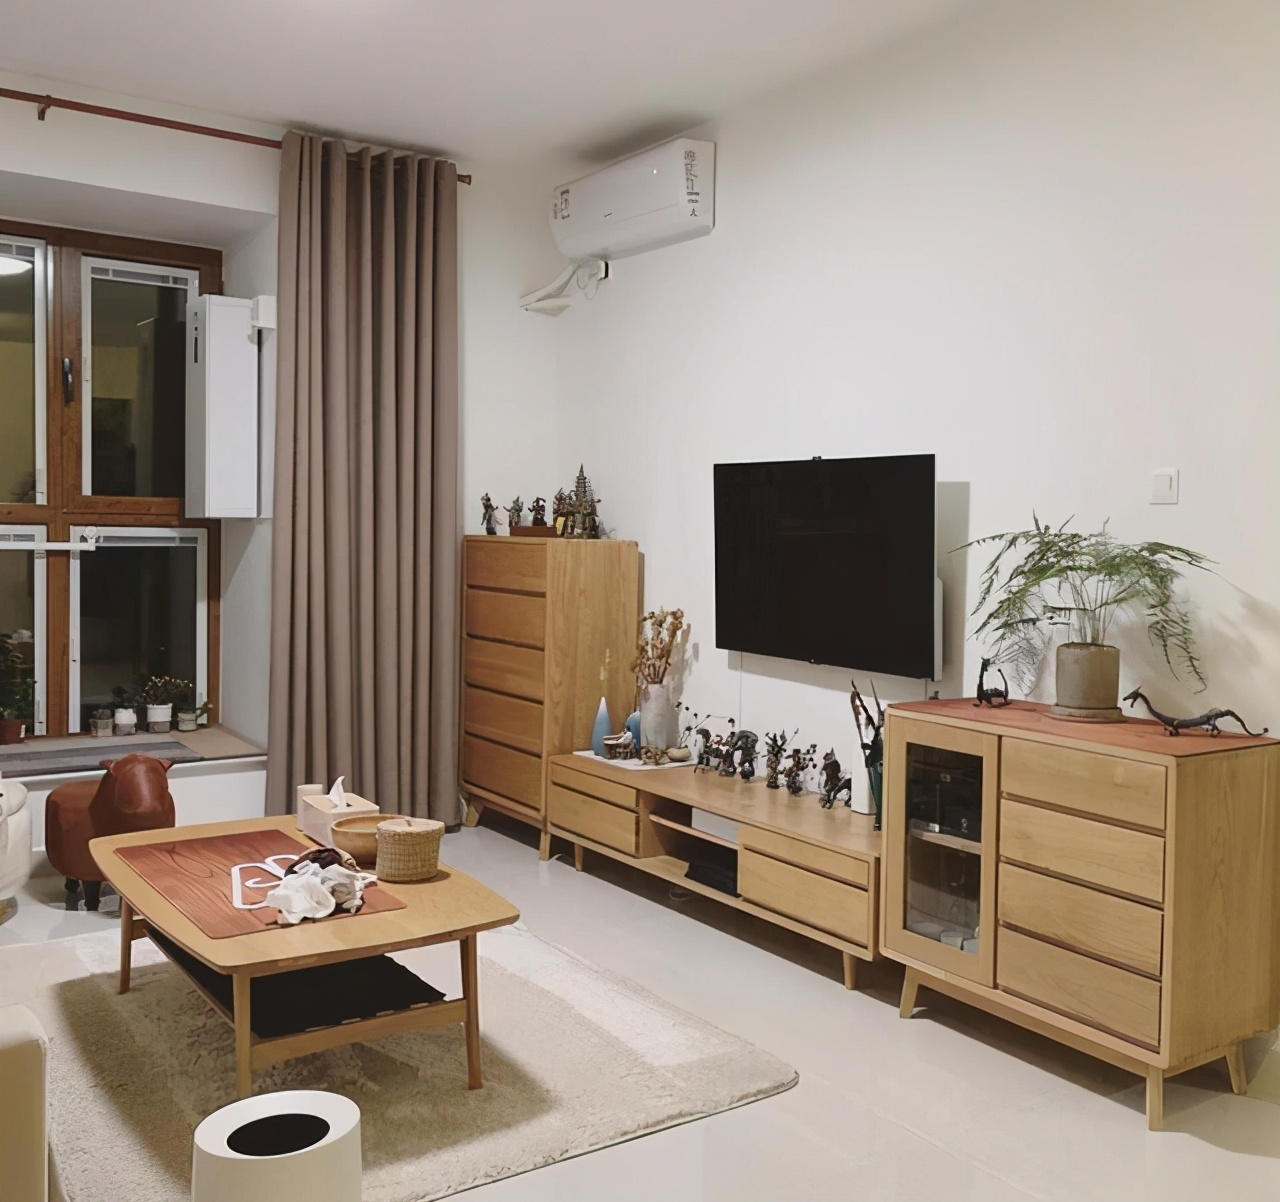 60平米小居室装修 简洁舒适完爆大房子!